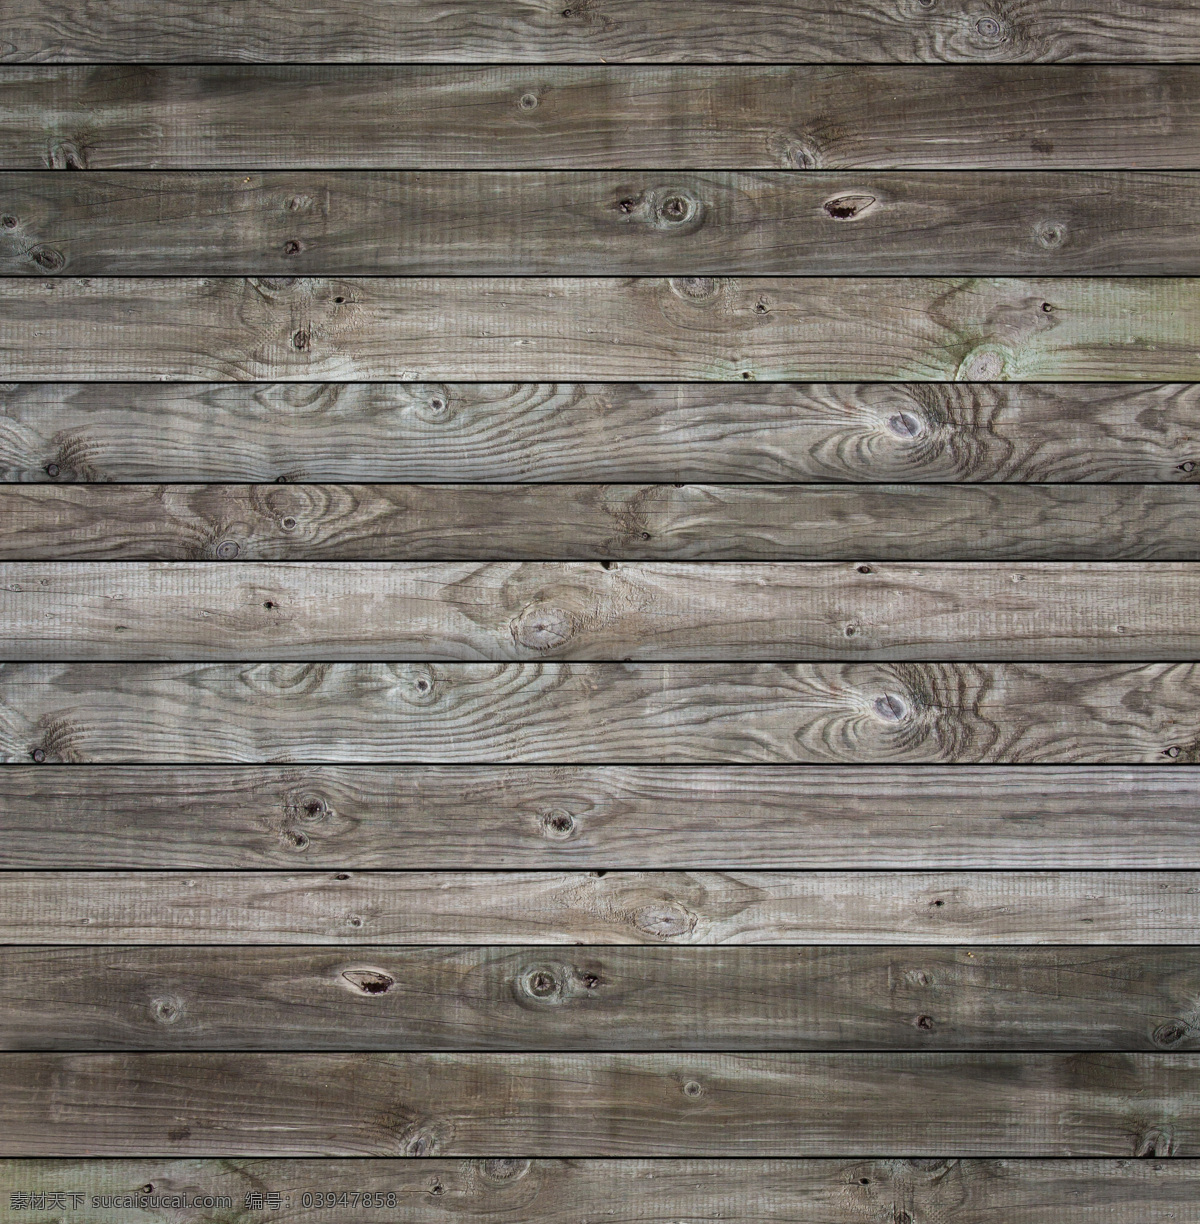 木板 背景 木质 材质 木头背景 木质素材 木质背景 木头纹理 木头质感 木板背景 木板材质 生活素材 生活百科